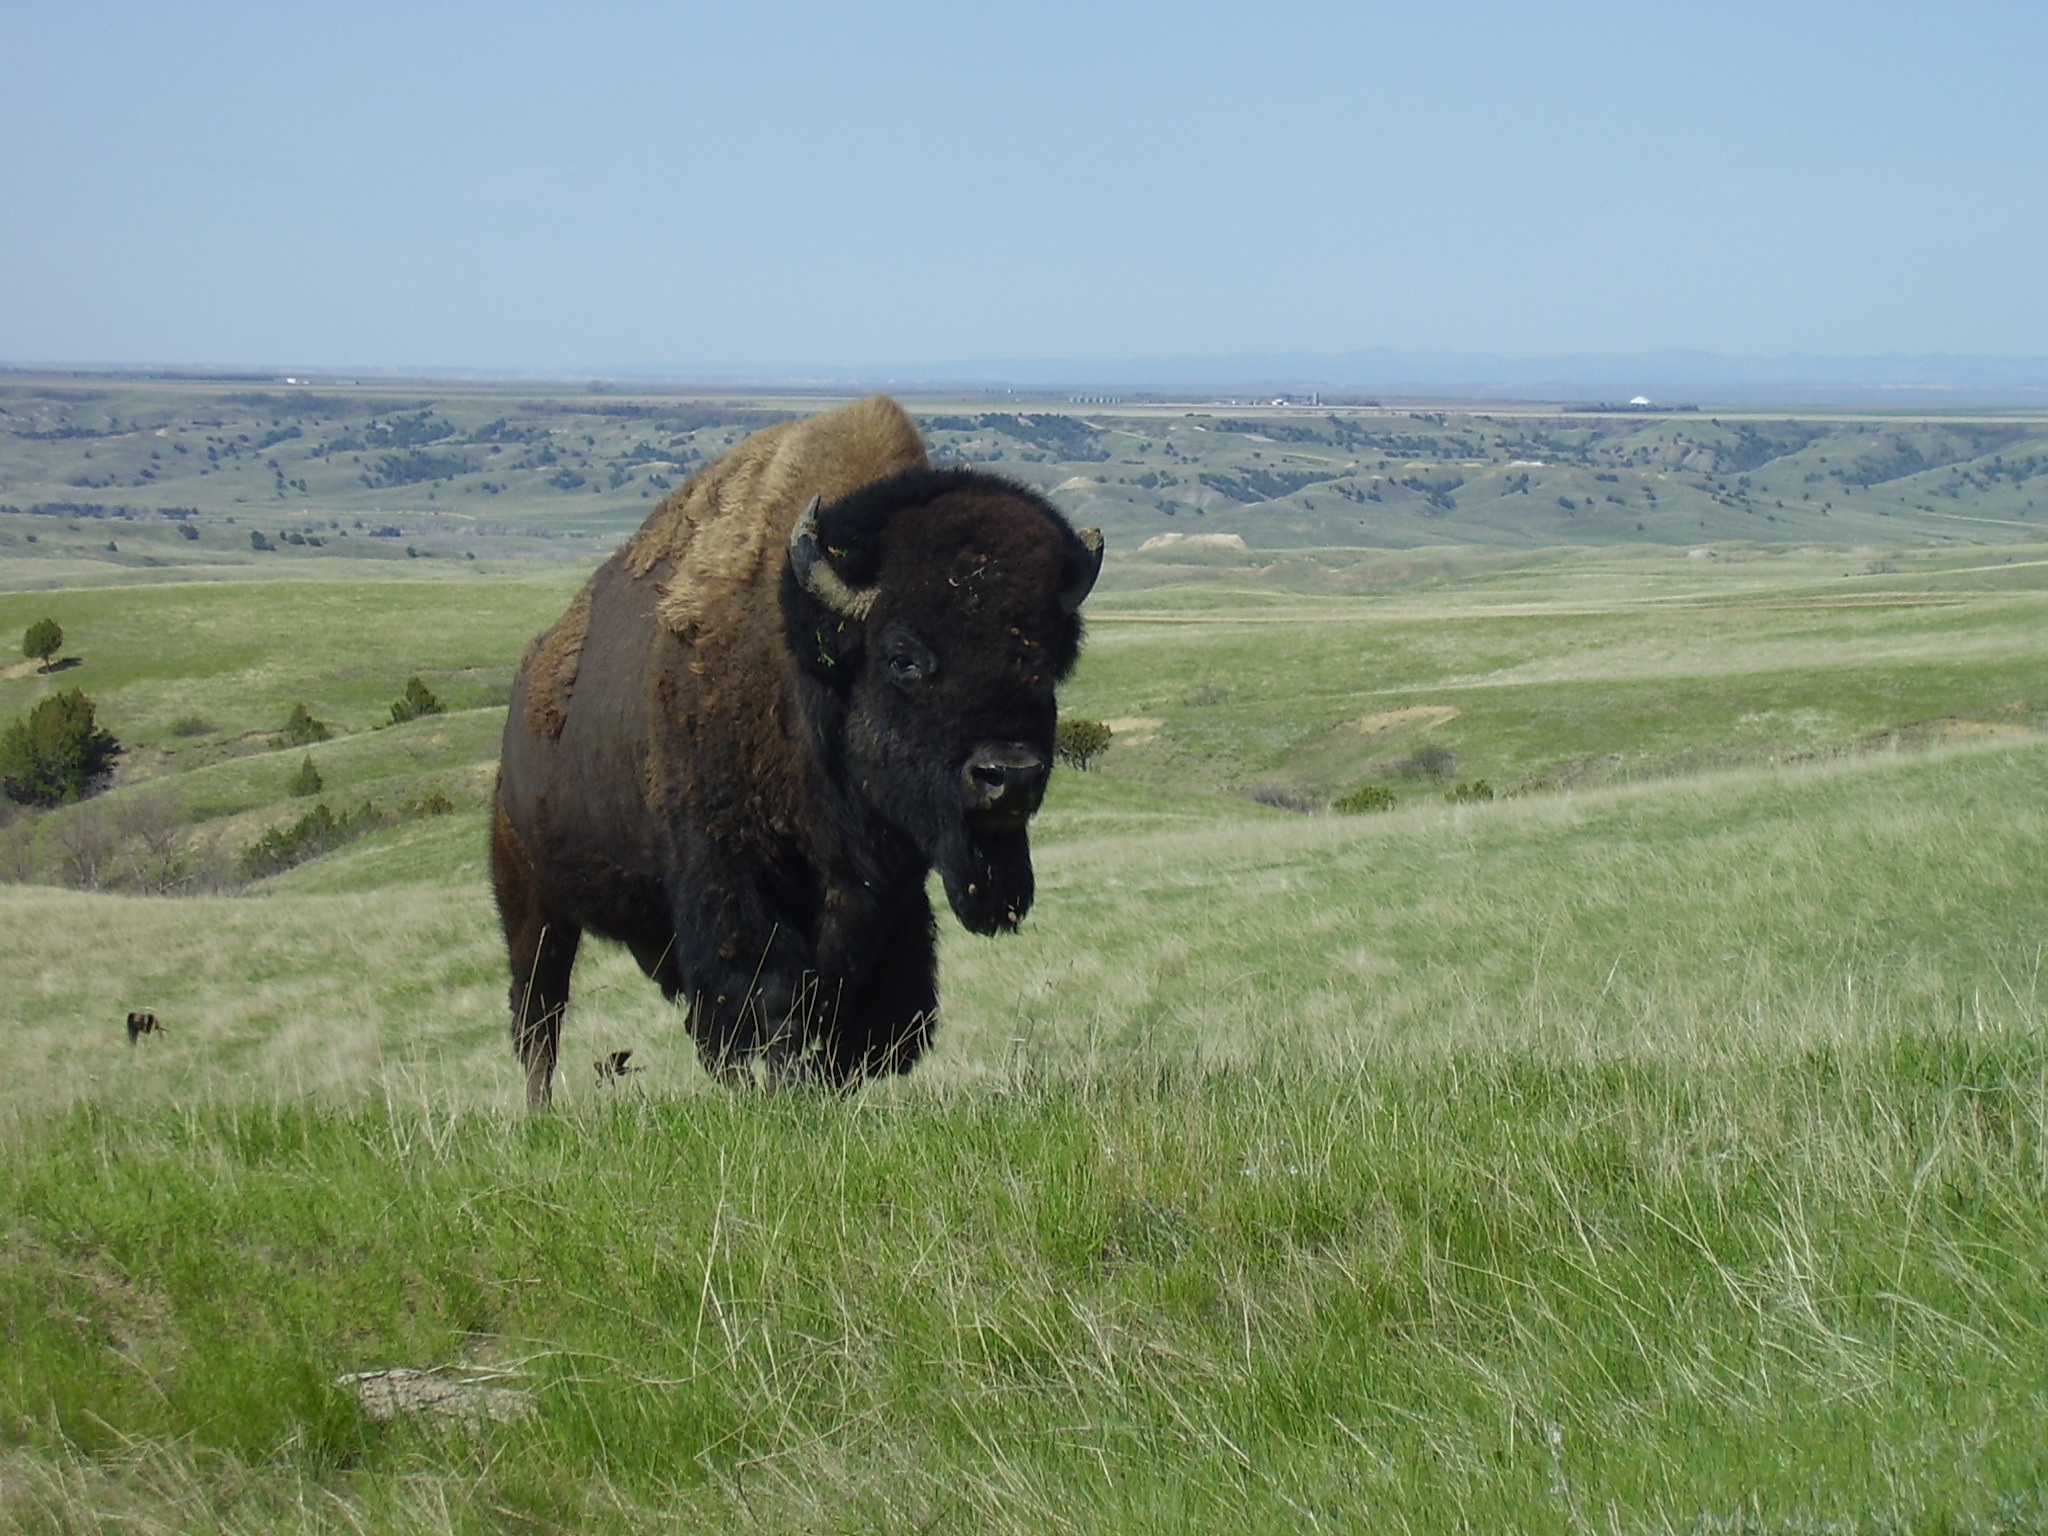 Steppe bison